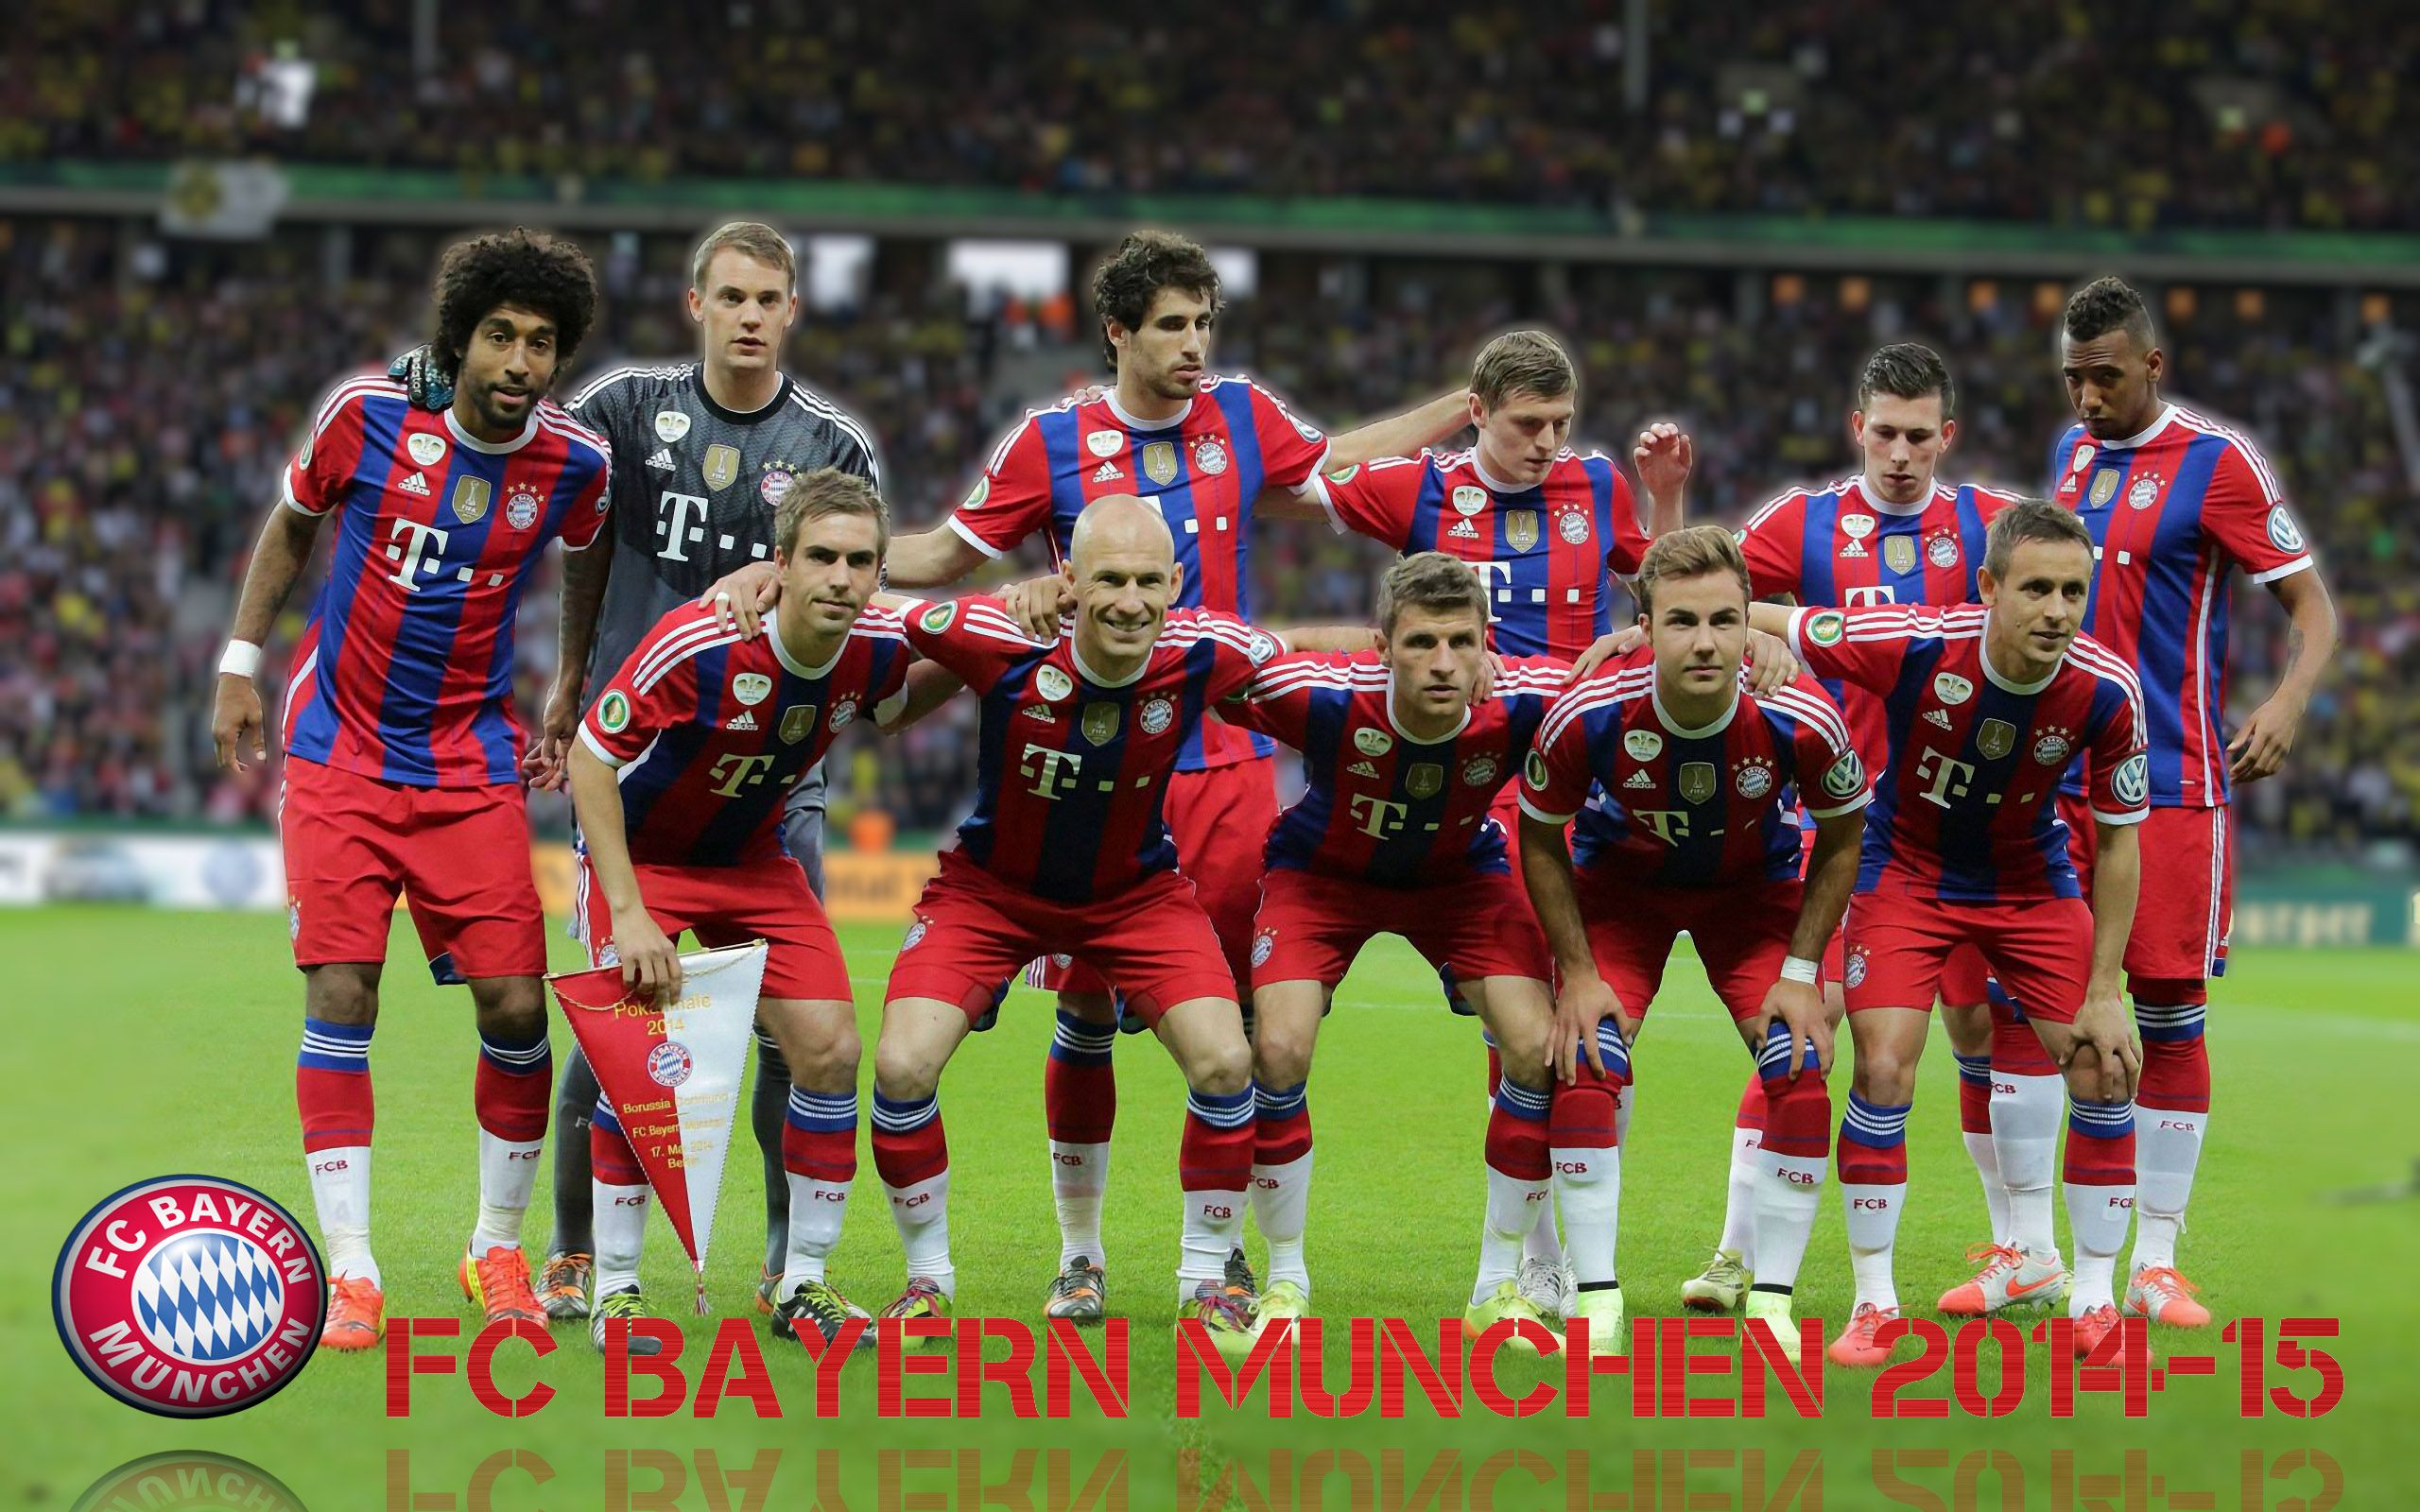 FC Bayern Munich football team 2014 2015 wallpaper backgrounds